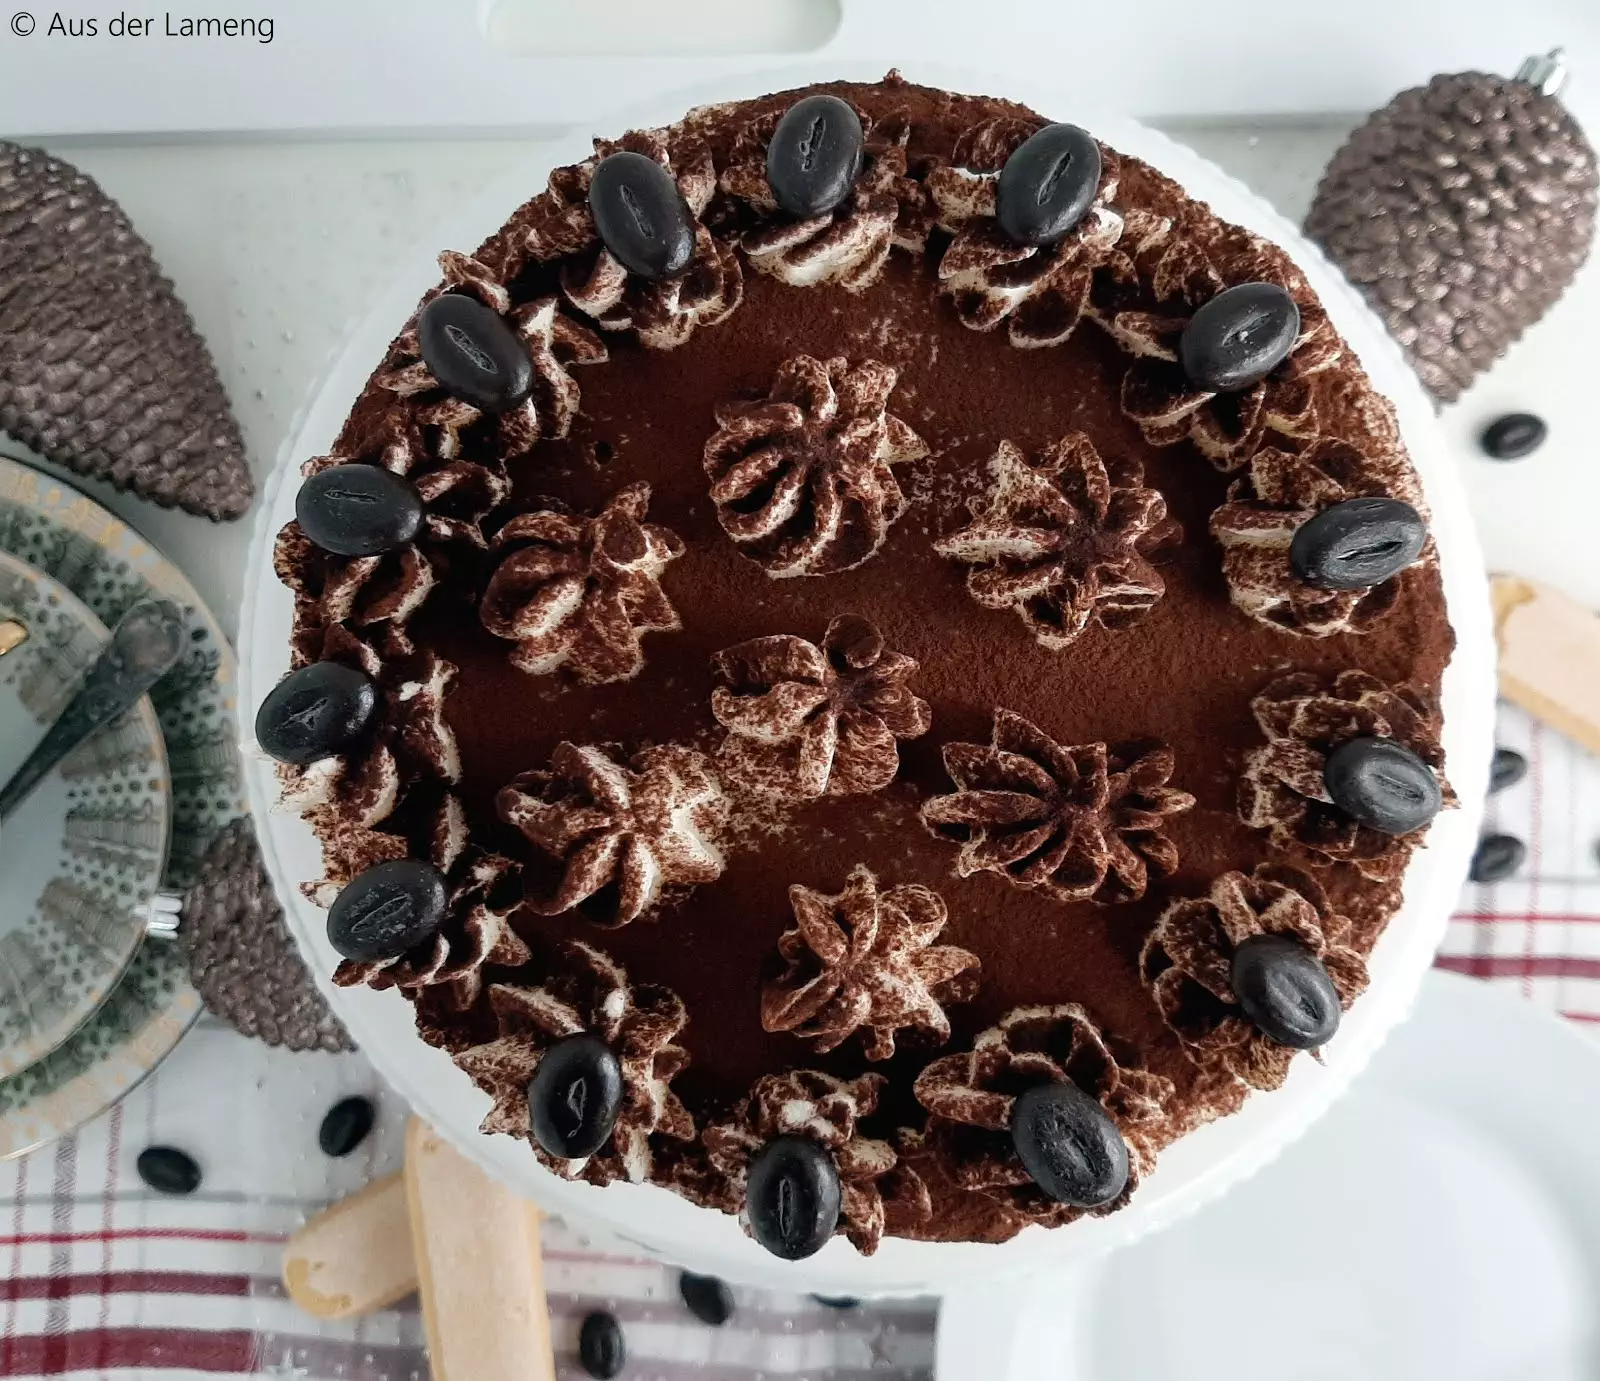 Weihnachtliche Tiramisu-Torte – Rezept von Aus der Lameng | SCCC 2019: Türchen Nr. 20